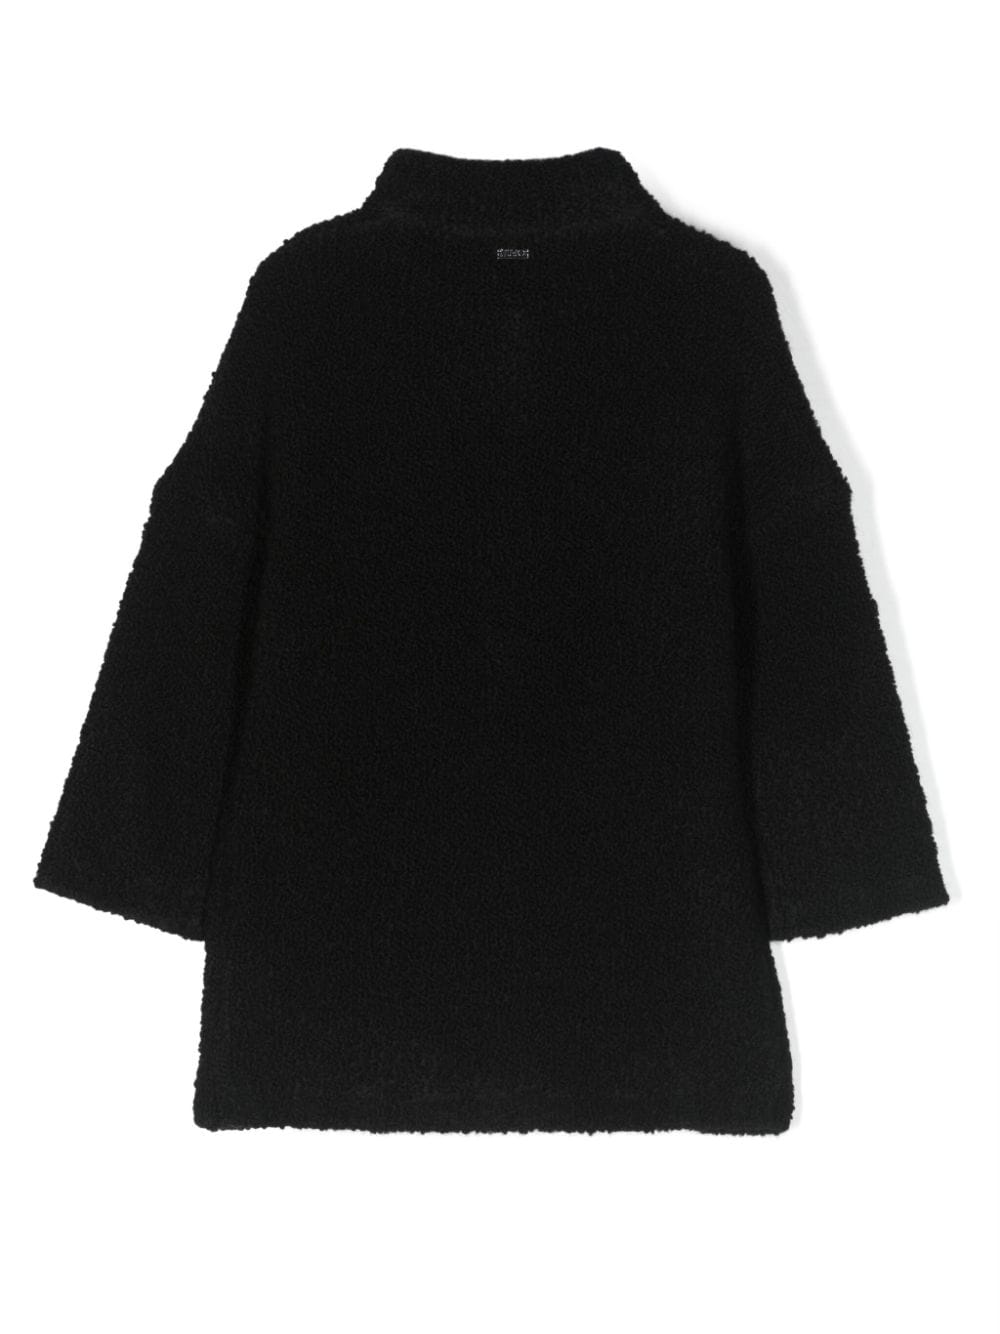 Black sheepskin coat for girls